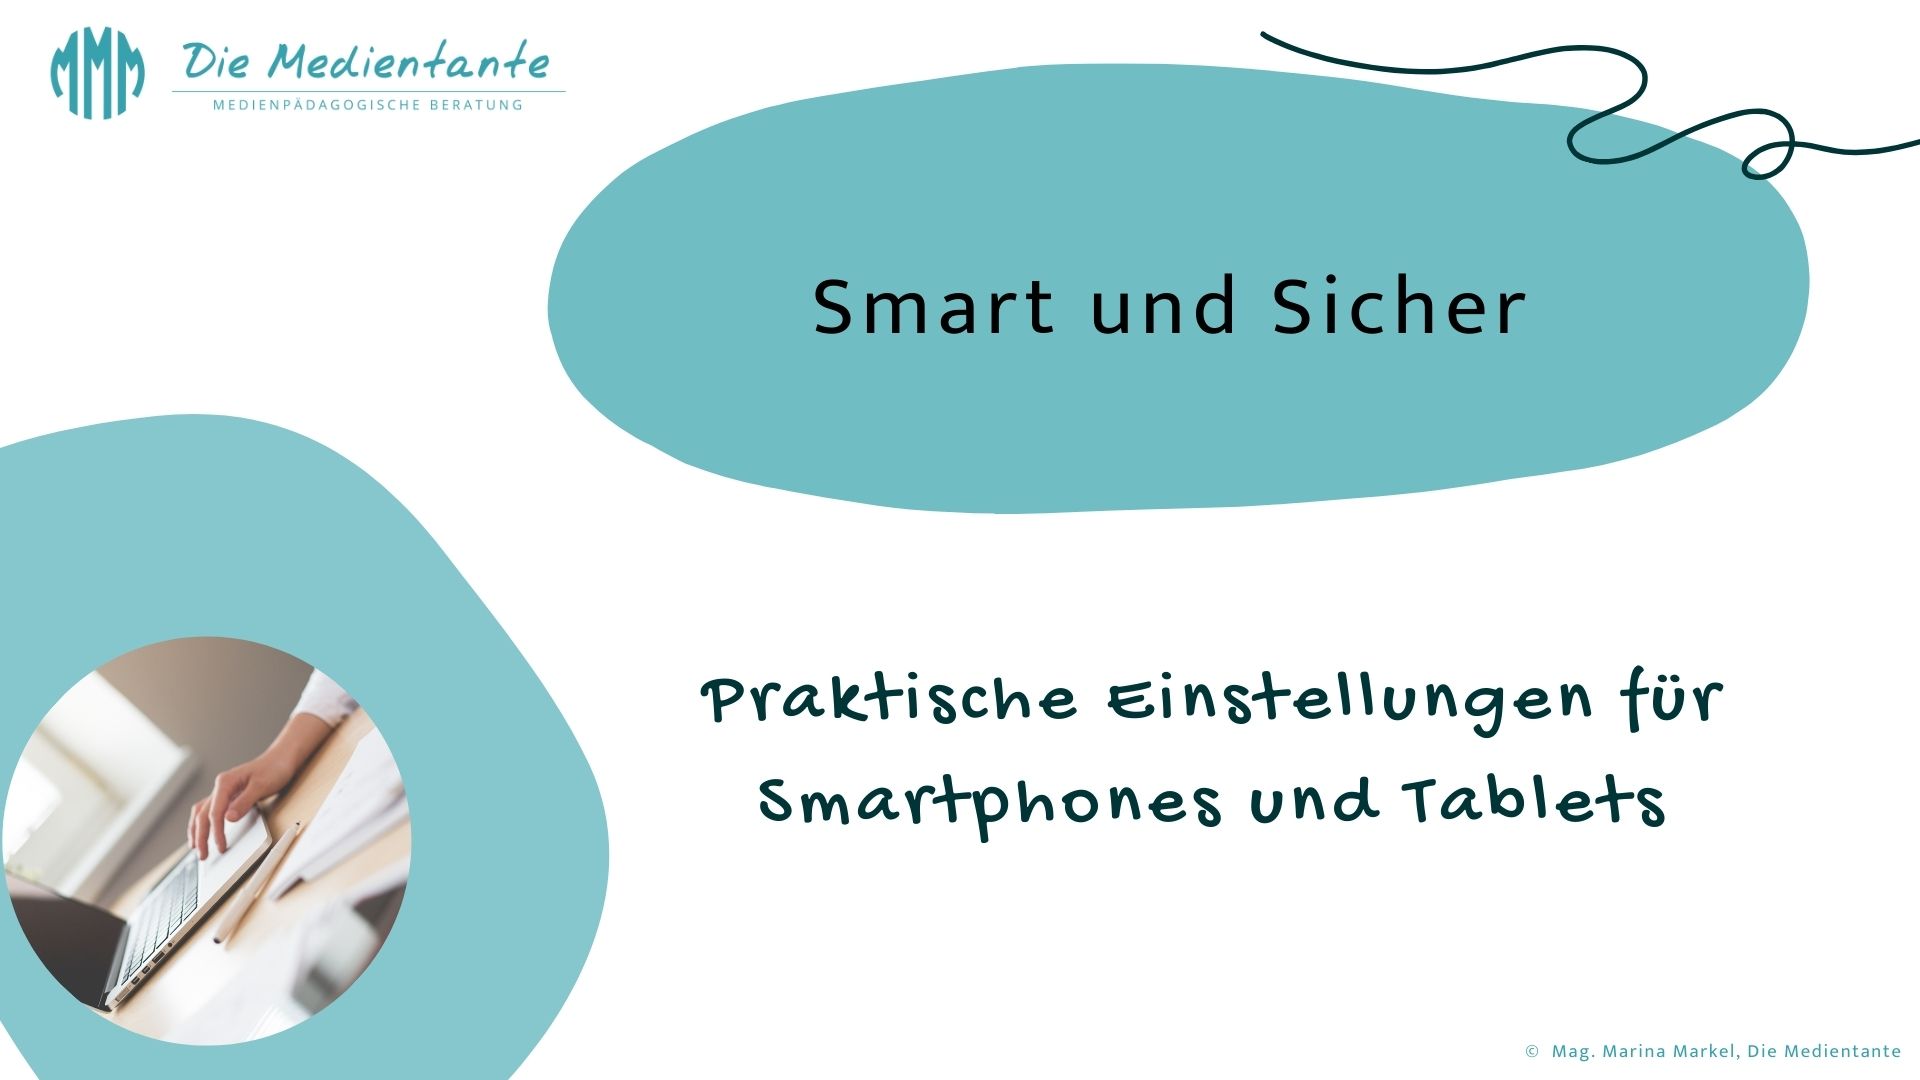 Smart und sicher – Praktische Einstellungen für Smartphones und Tablets